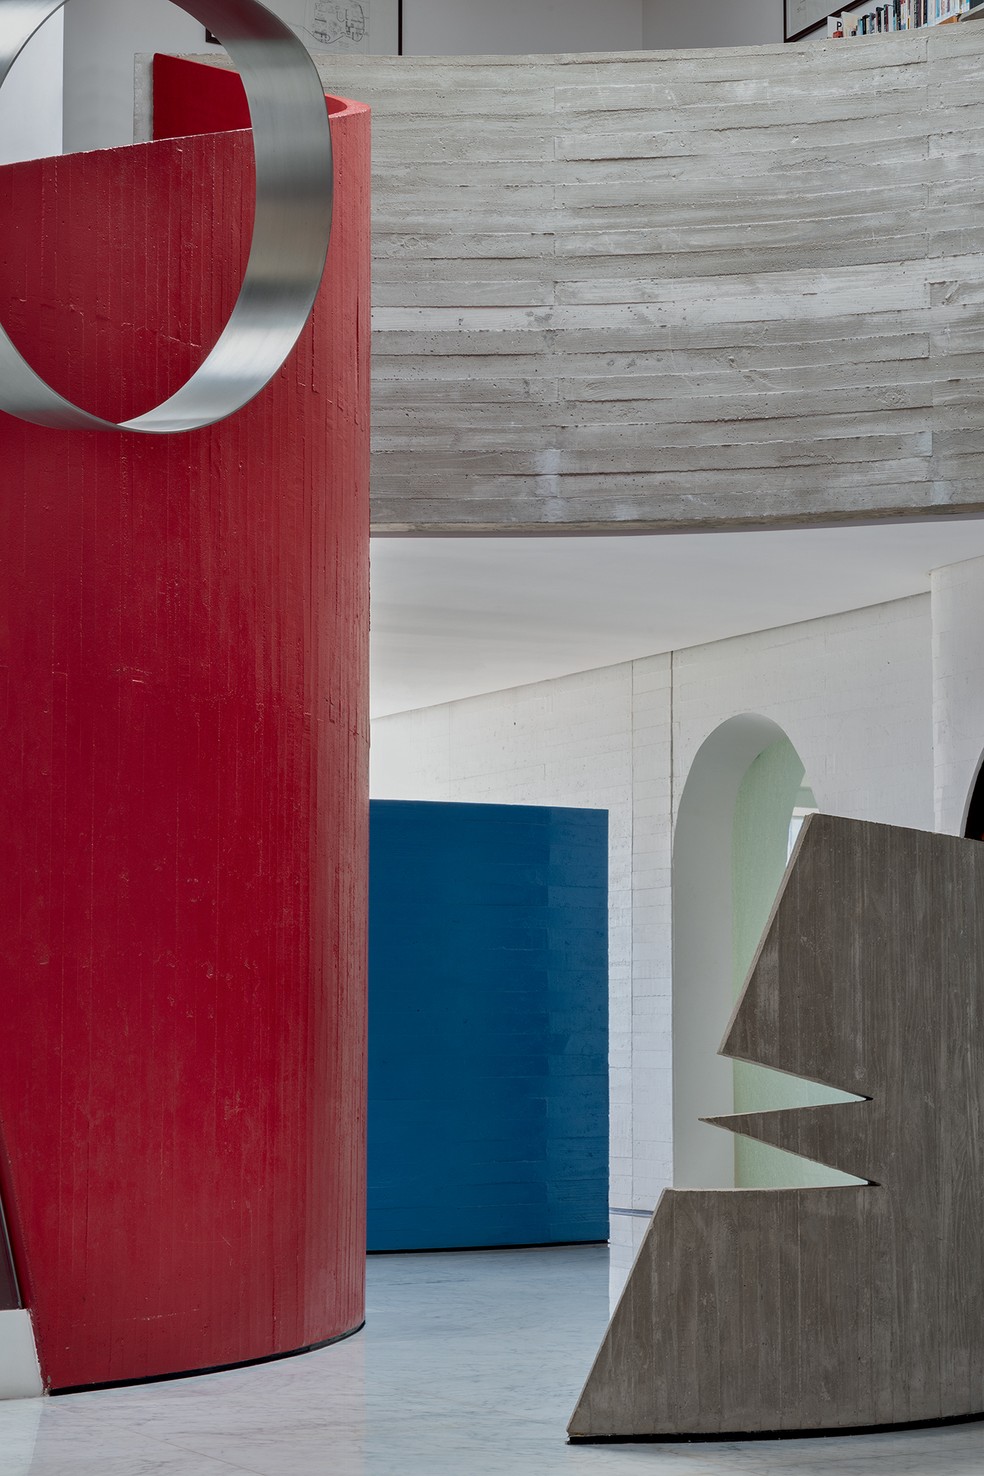 Vermelho e azul sobre concreto: cores e material característicos no trabalho de Ruy Ohtake — Foto: Ruy Teixeira